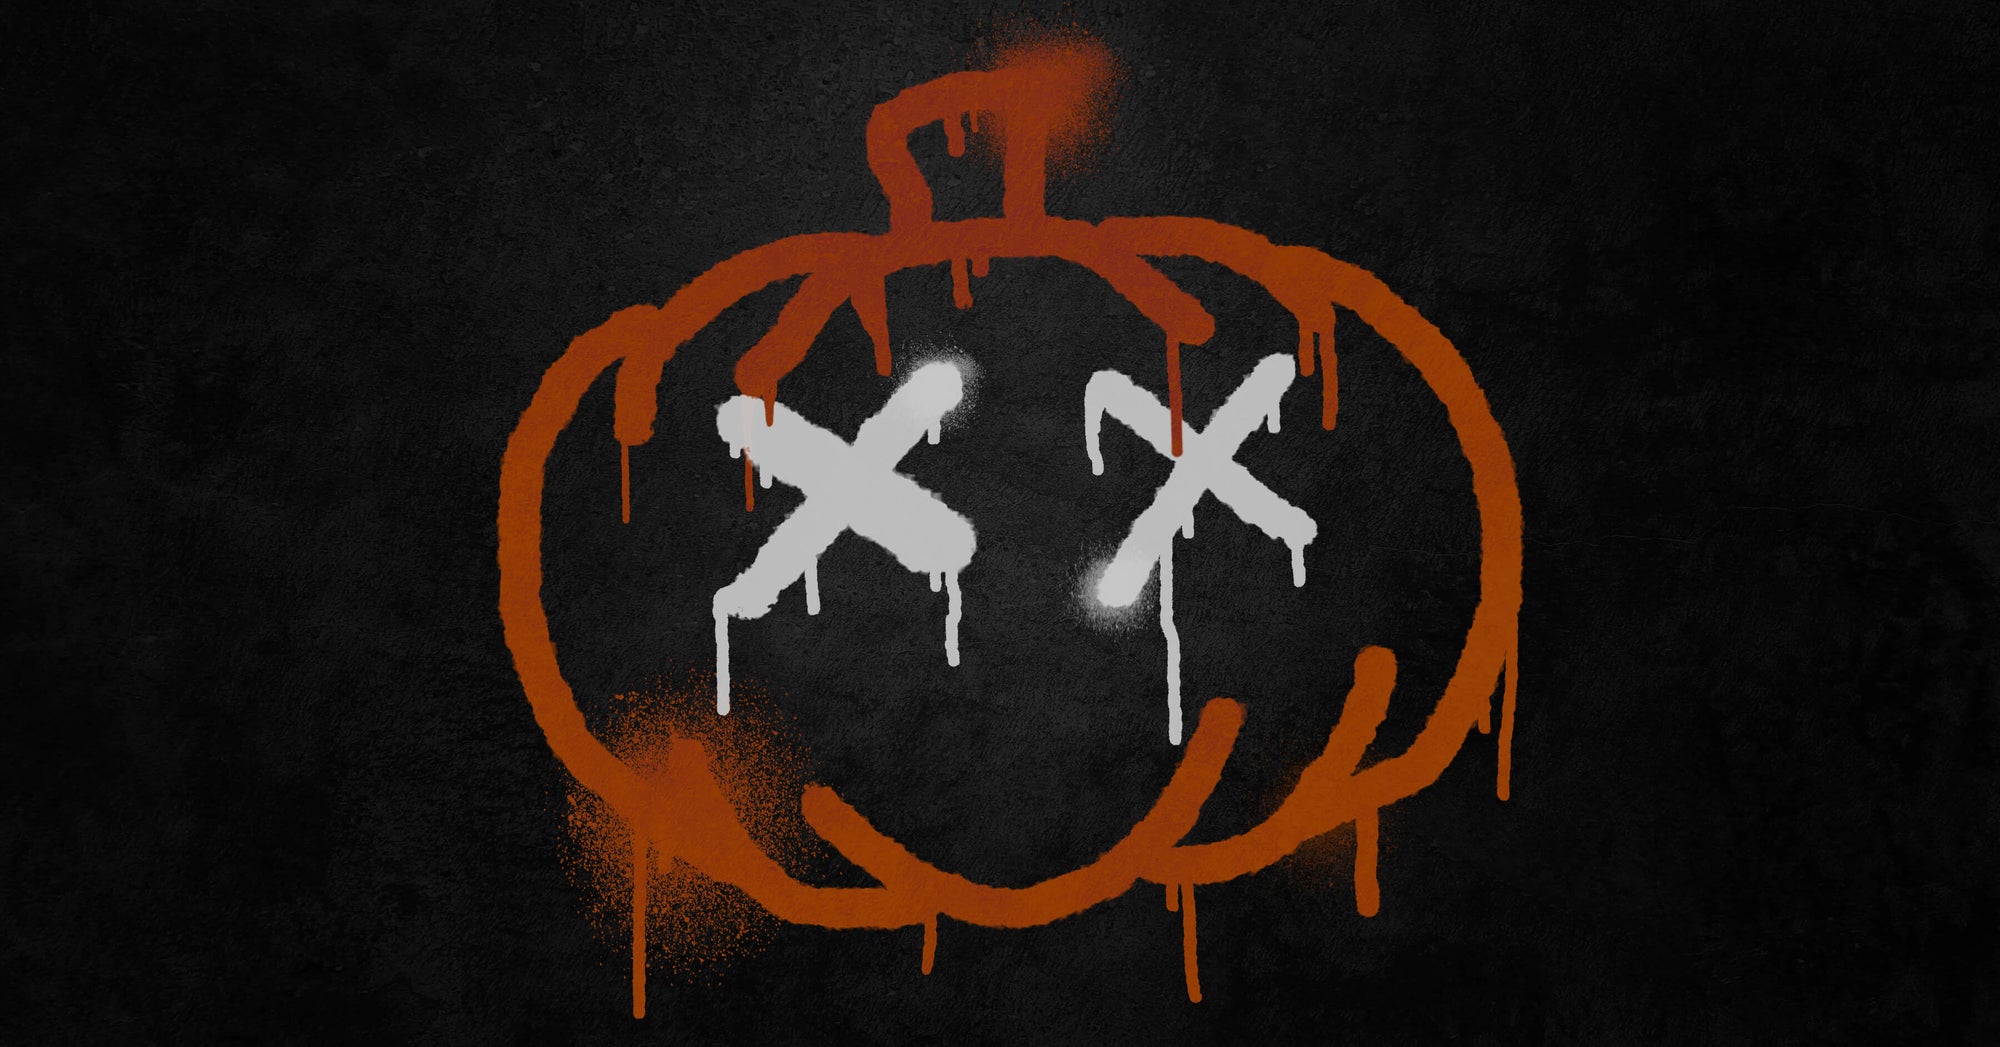 Graffiti pumpkin with X's as eyes